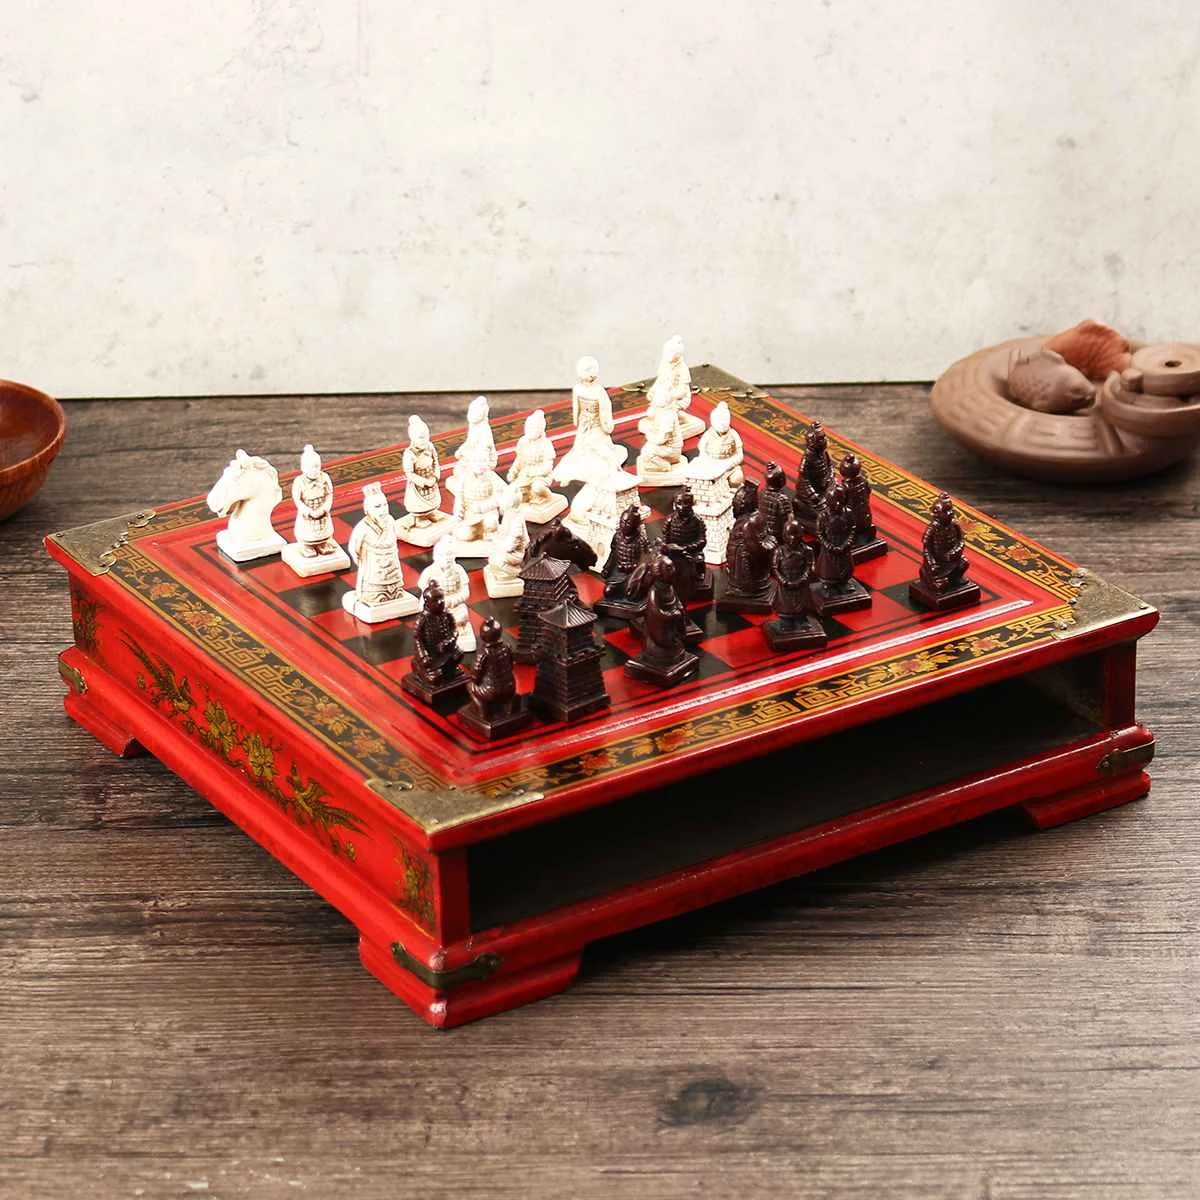 Ретро деревянные китайские терракотовая Warrior шахматная доска комплект Смола резьба фигуры игра в шашки игры премиум подарки шахматы